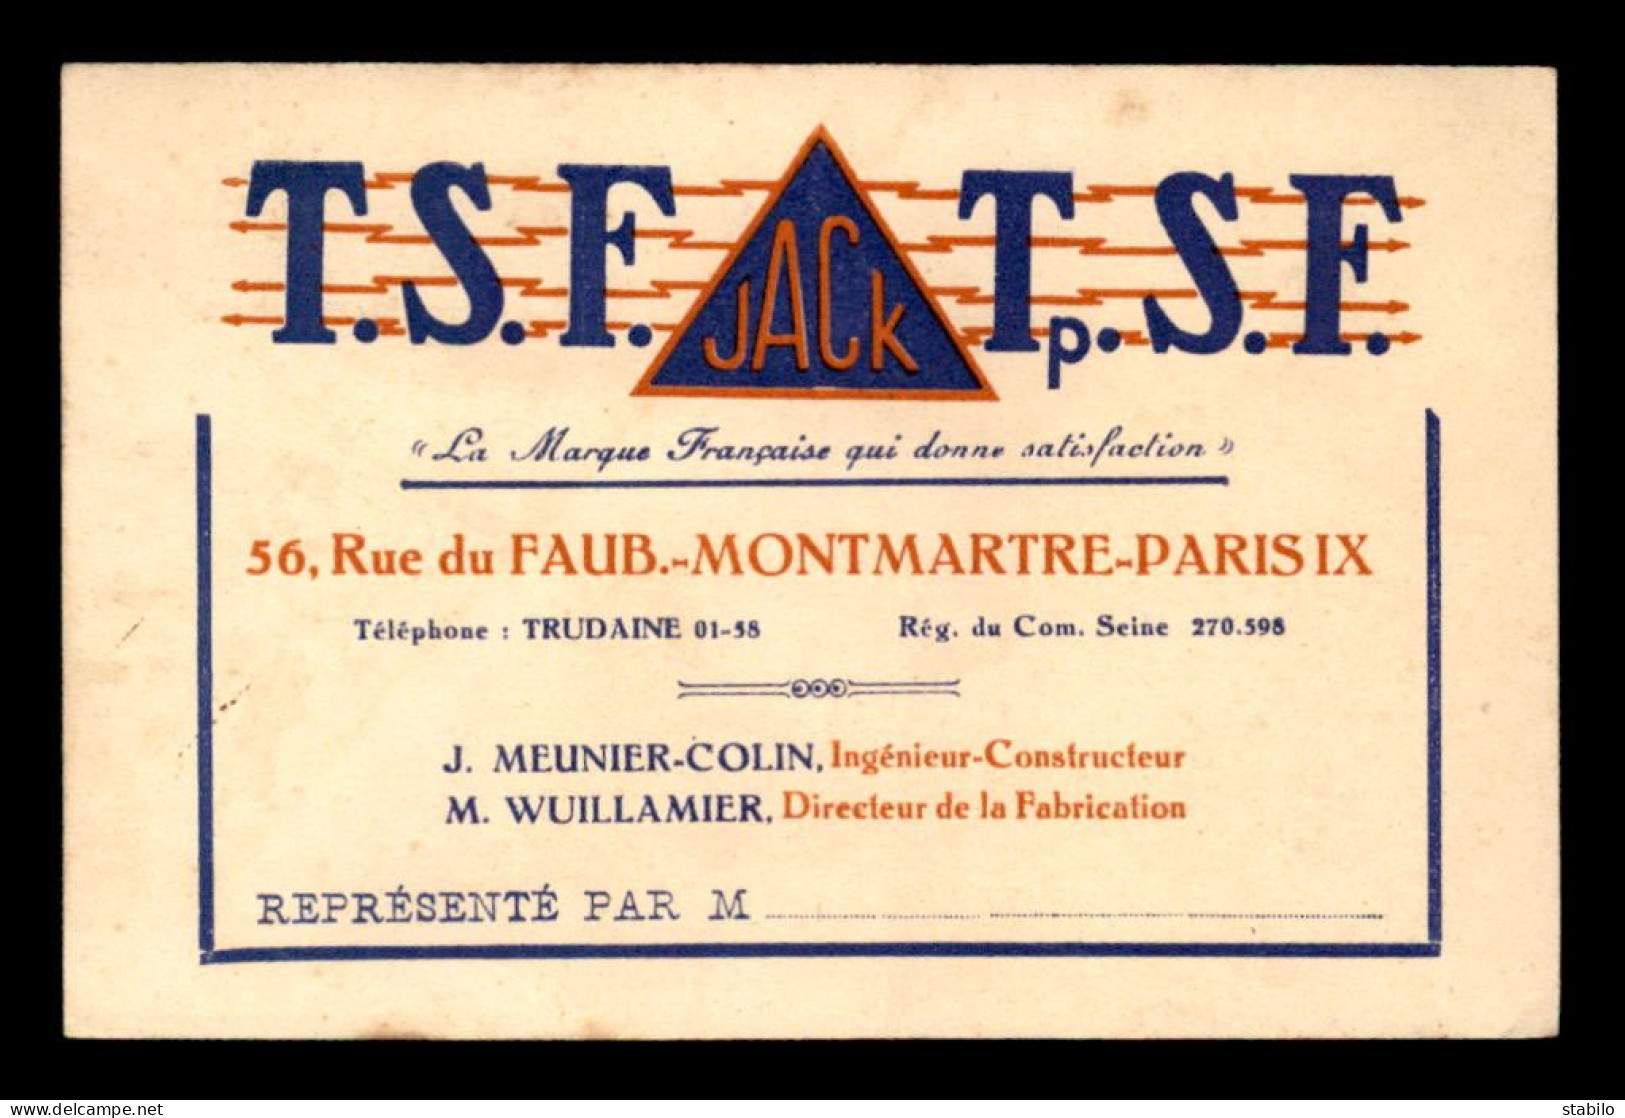 CARTE DE VISITE - T.S.F. JACK, 56 RUE DU FG MONTMARTRE PARIS 9EME - FORMAT 12 X 7.8 CM - Visitenkarten